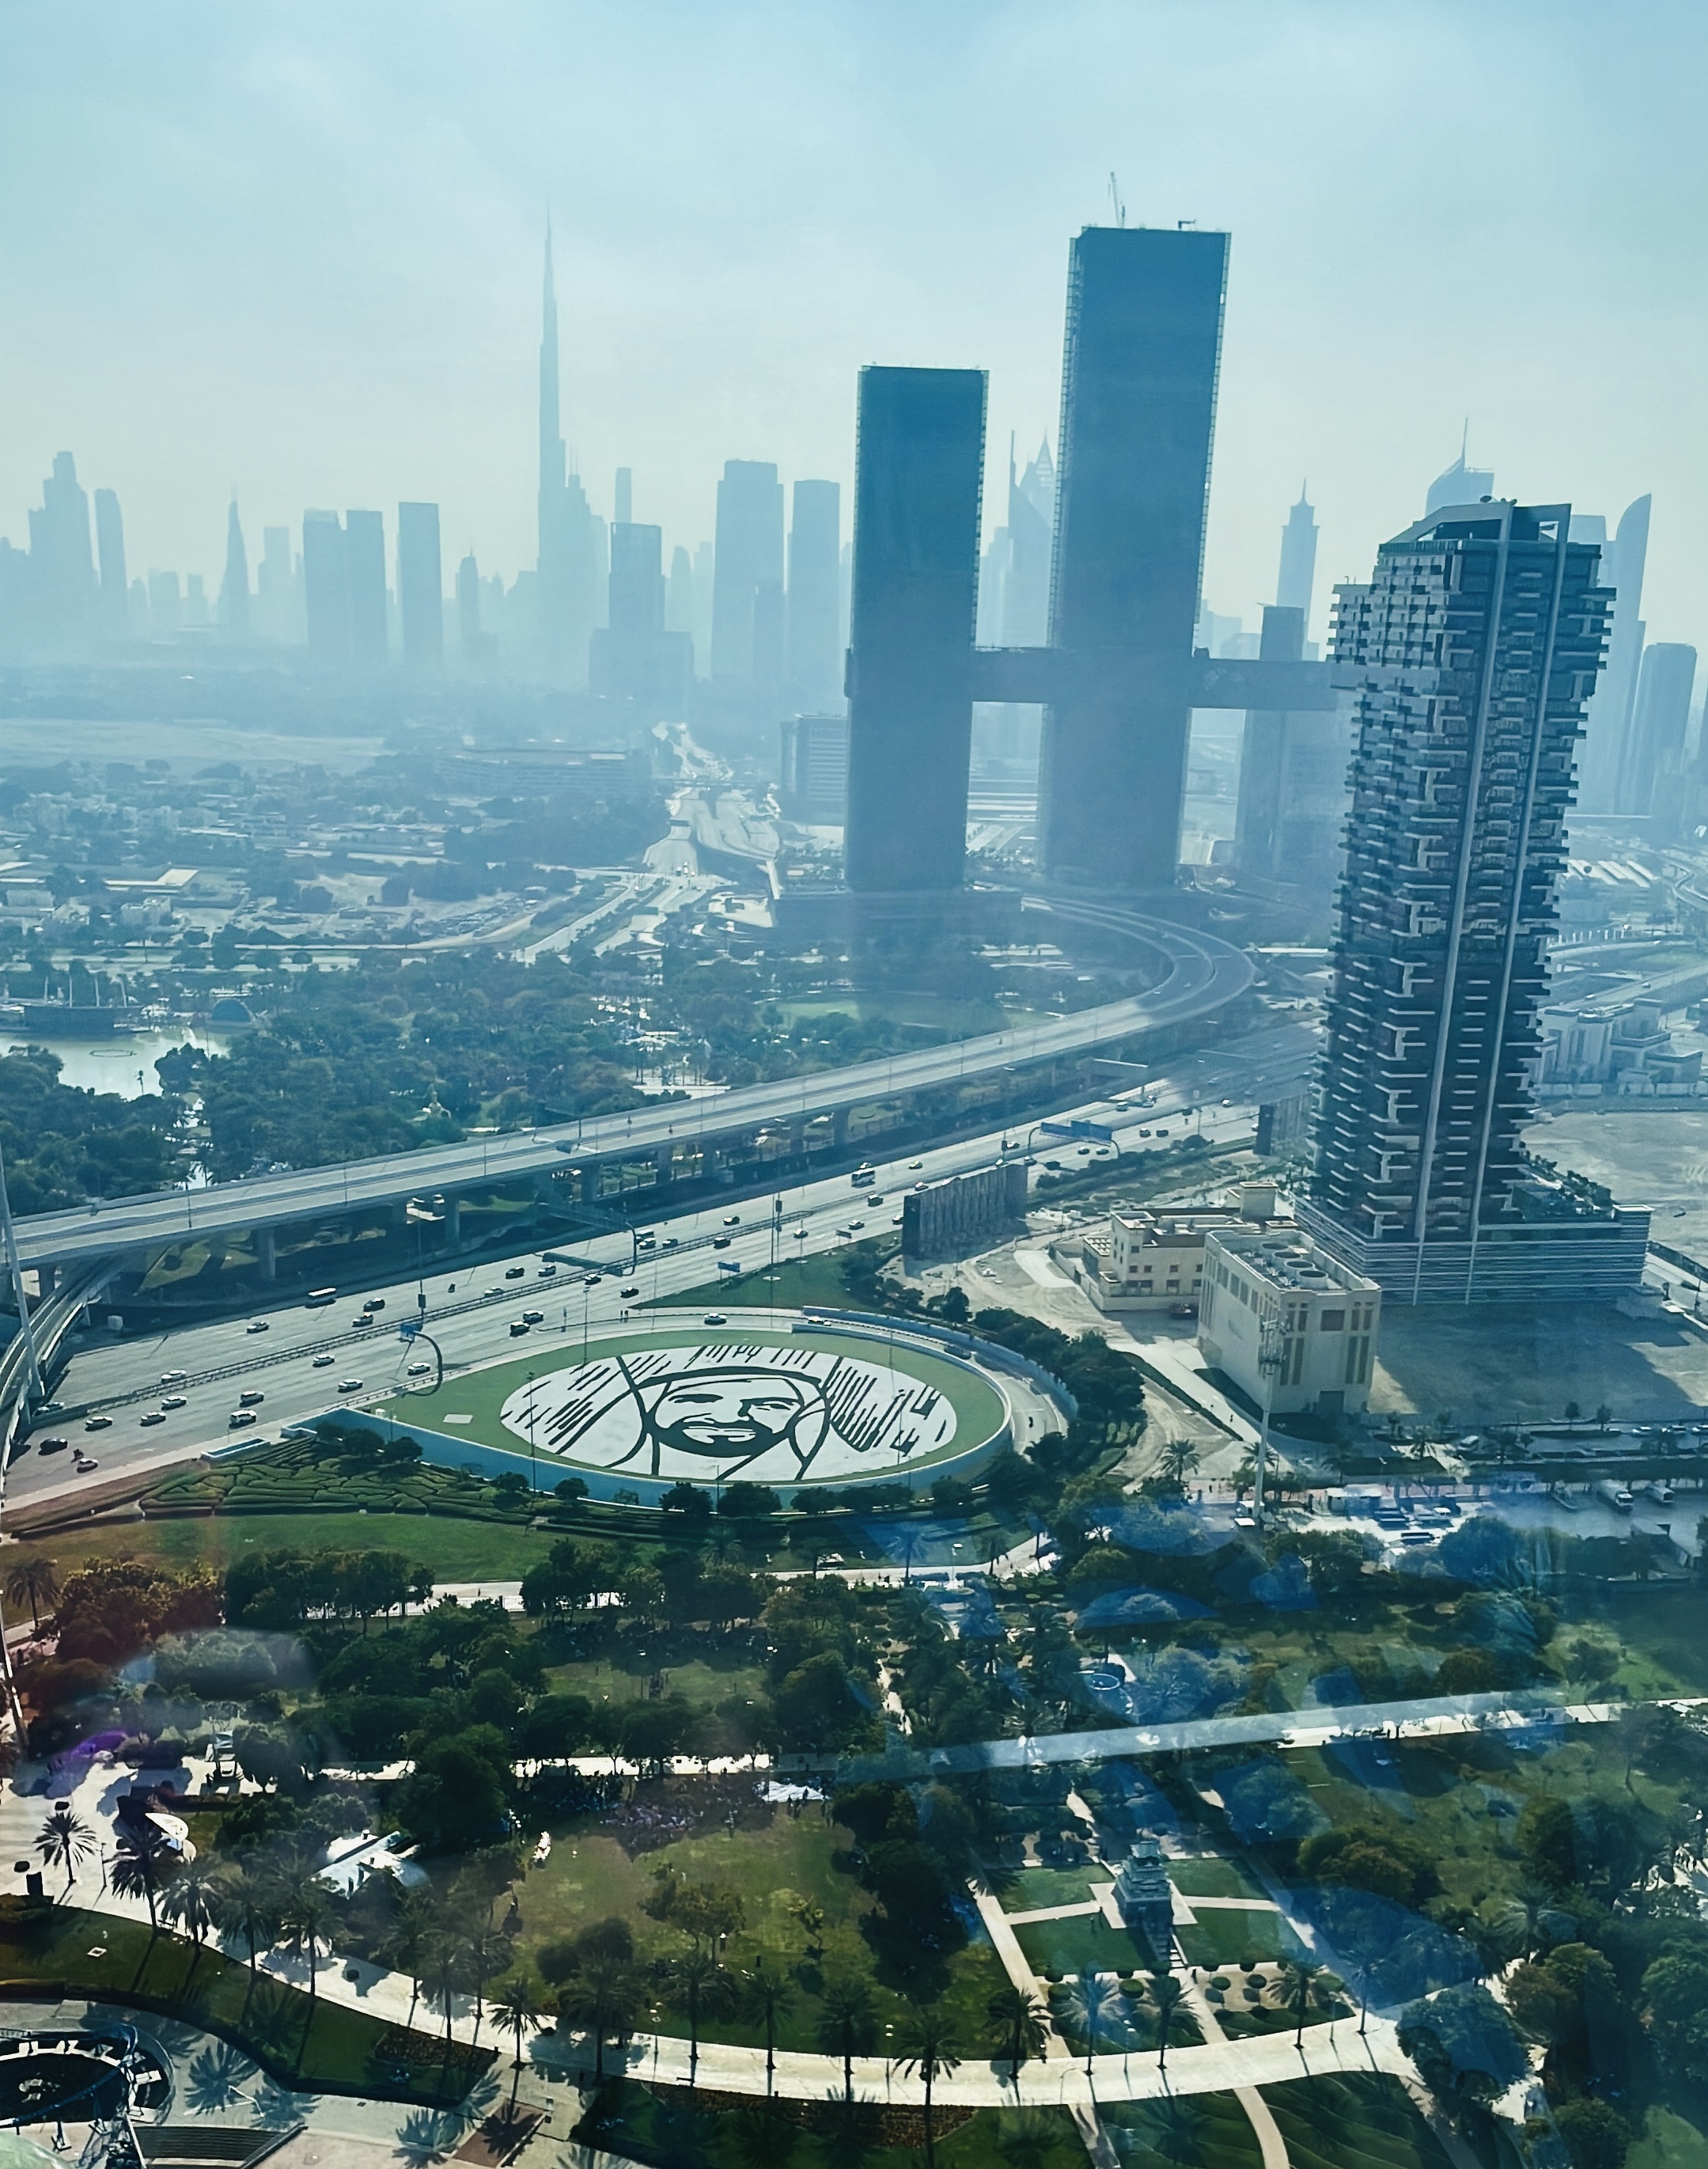 City of Dubai